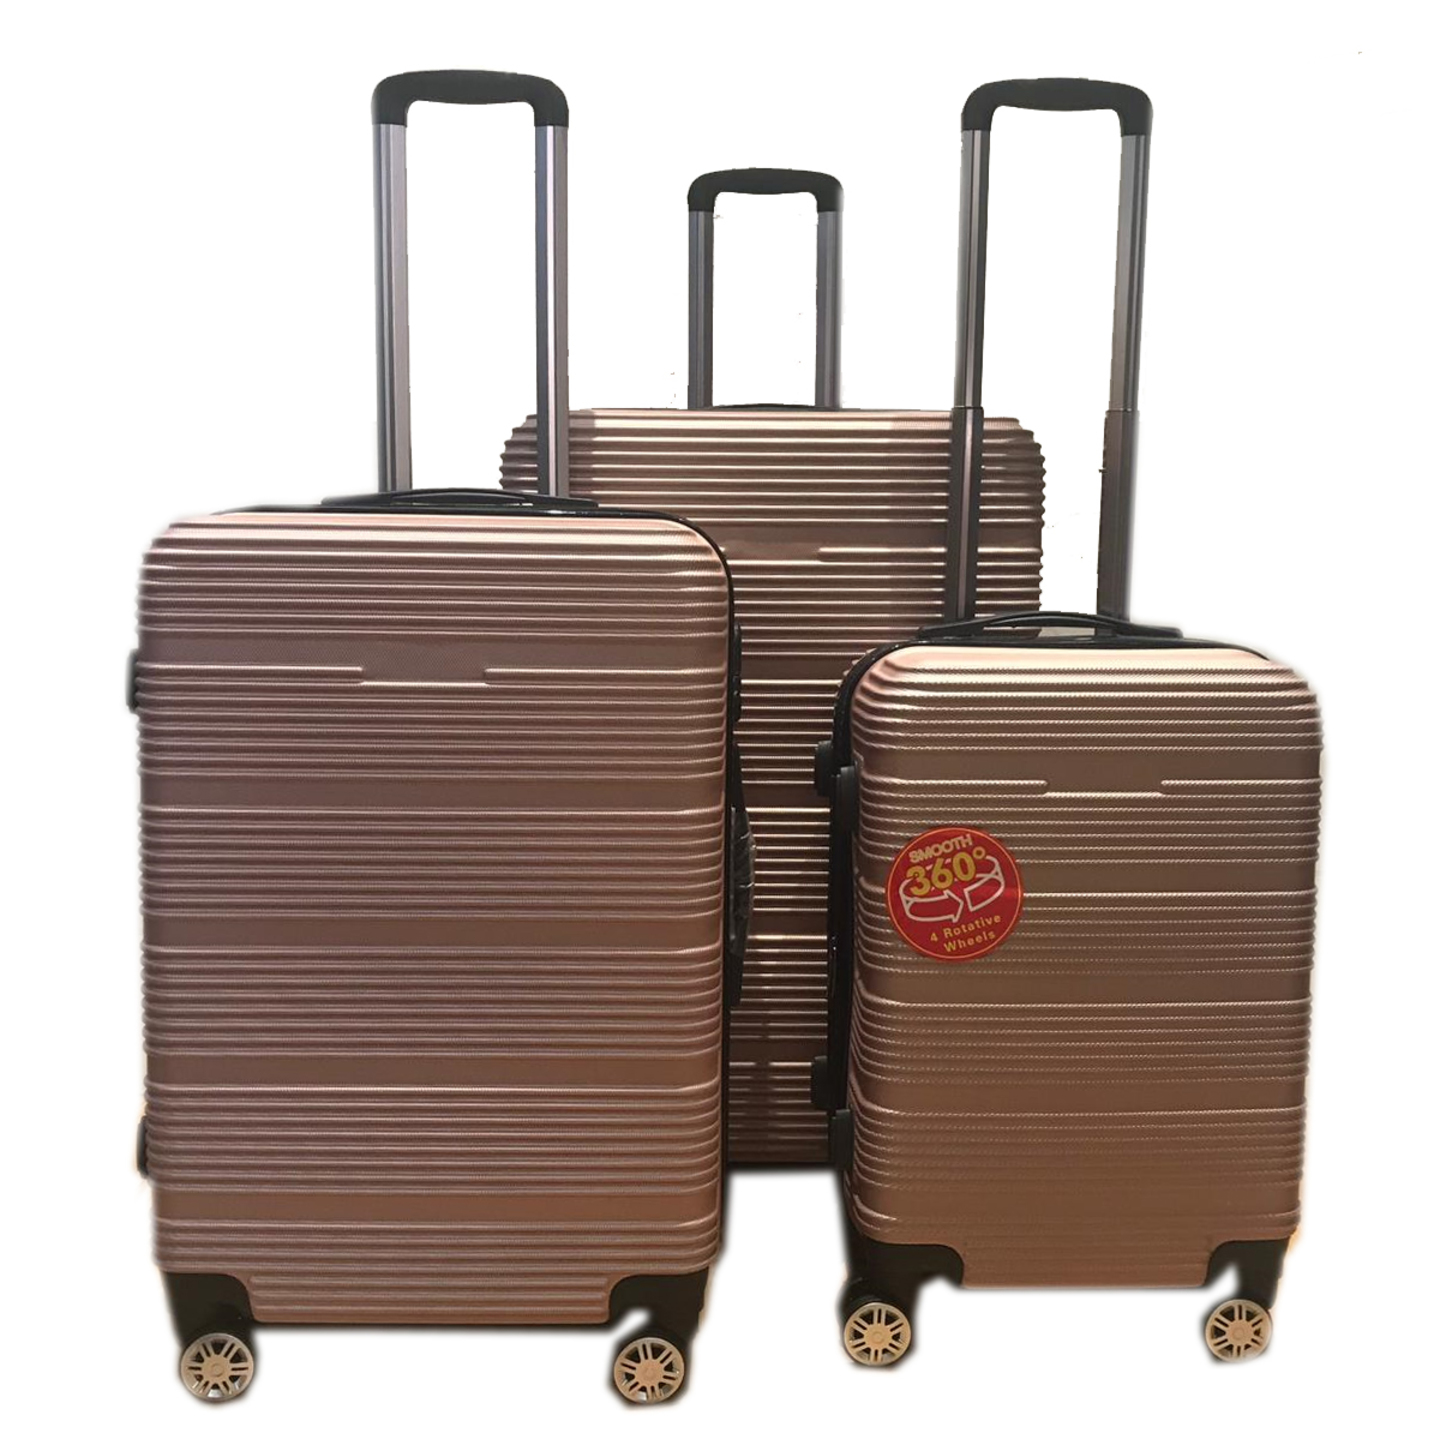 SGT-02 Elegant Hard Box Luggage - Rose Gold  20 inch, 24 inch, 28 inch